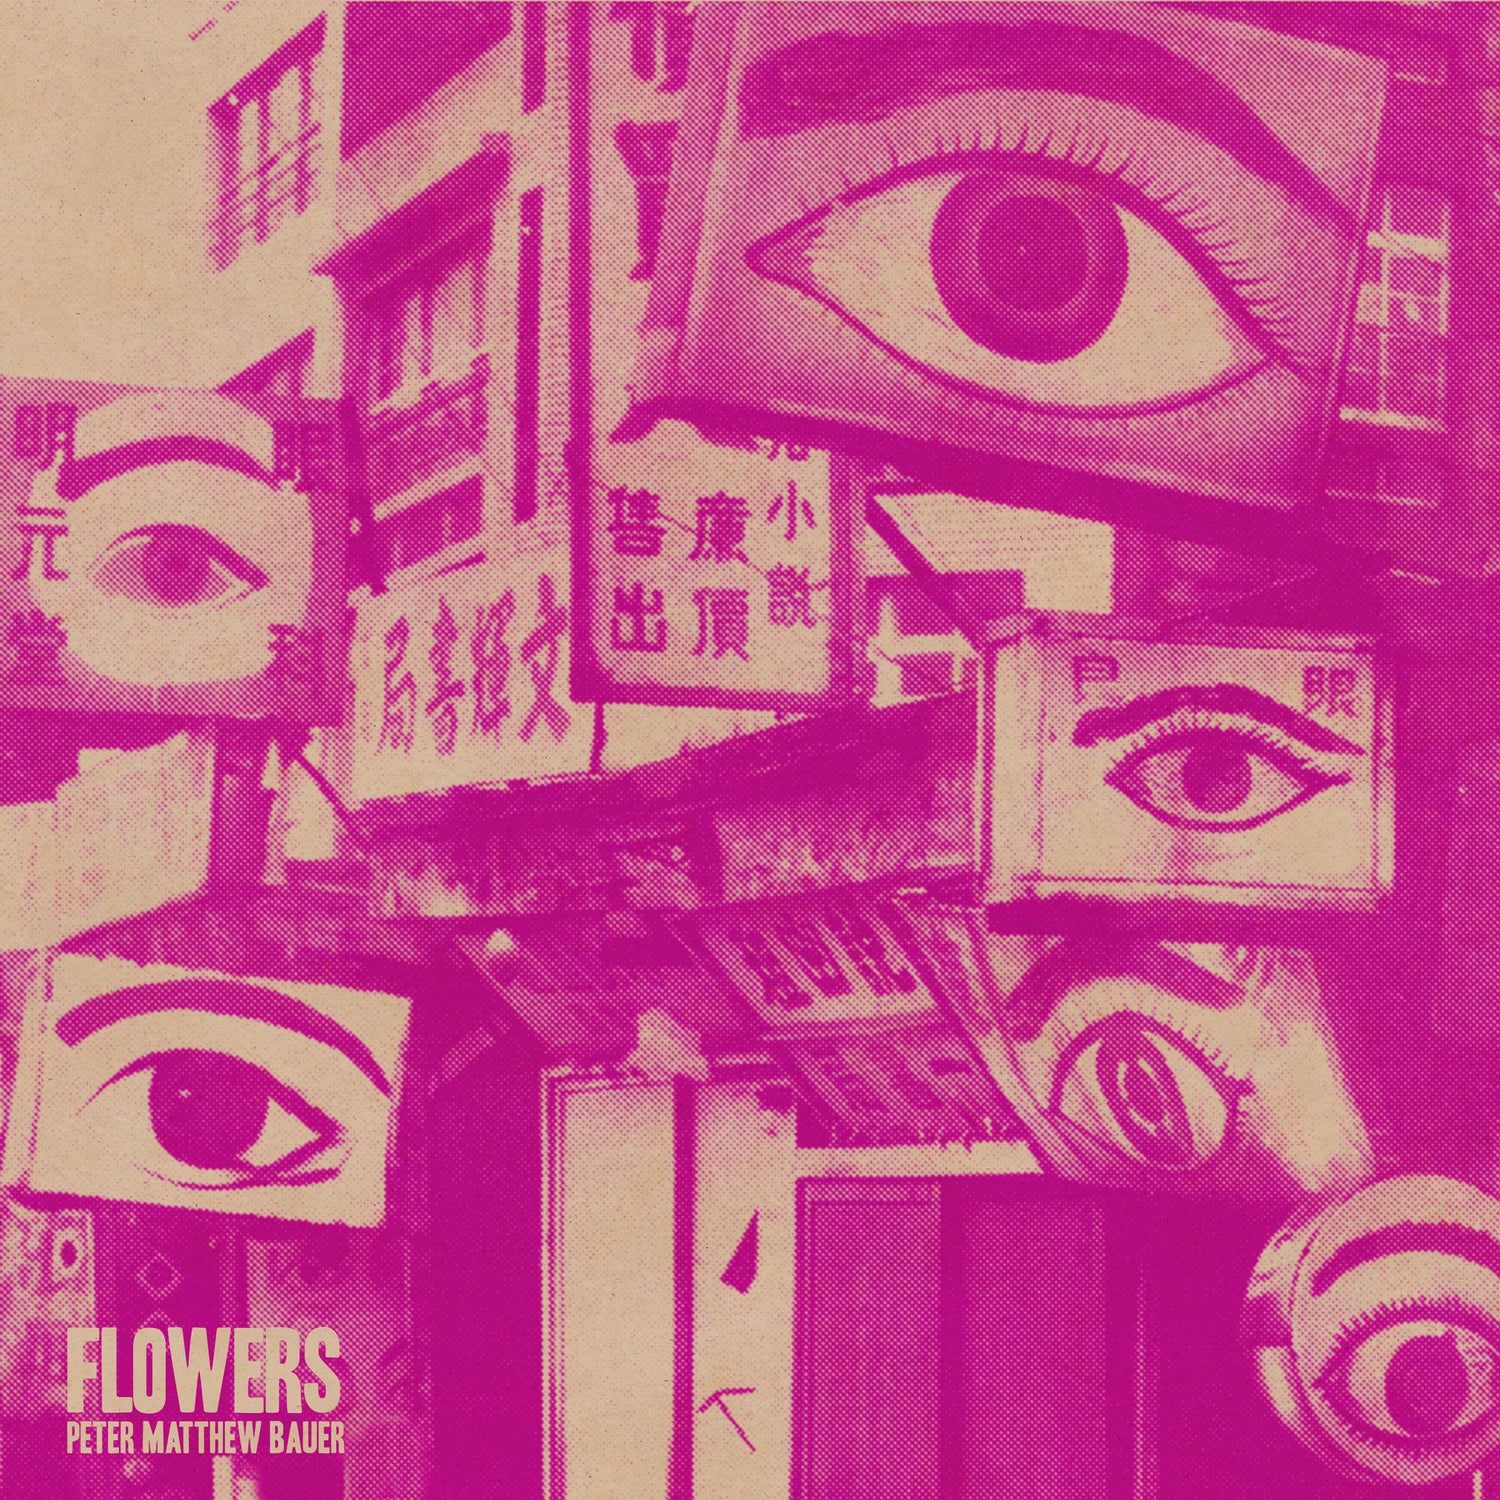 "Flowers" Limited Vinyl LP